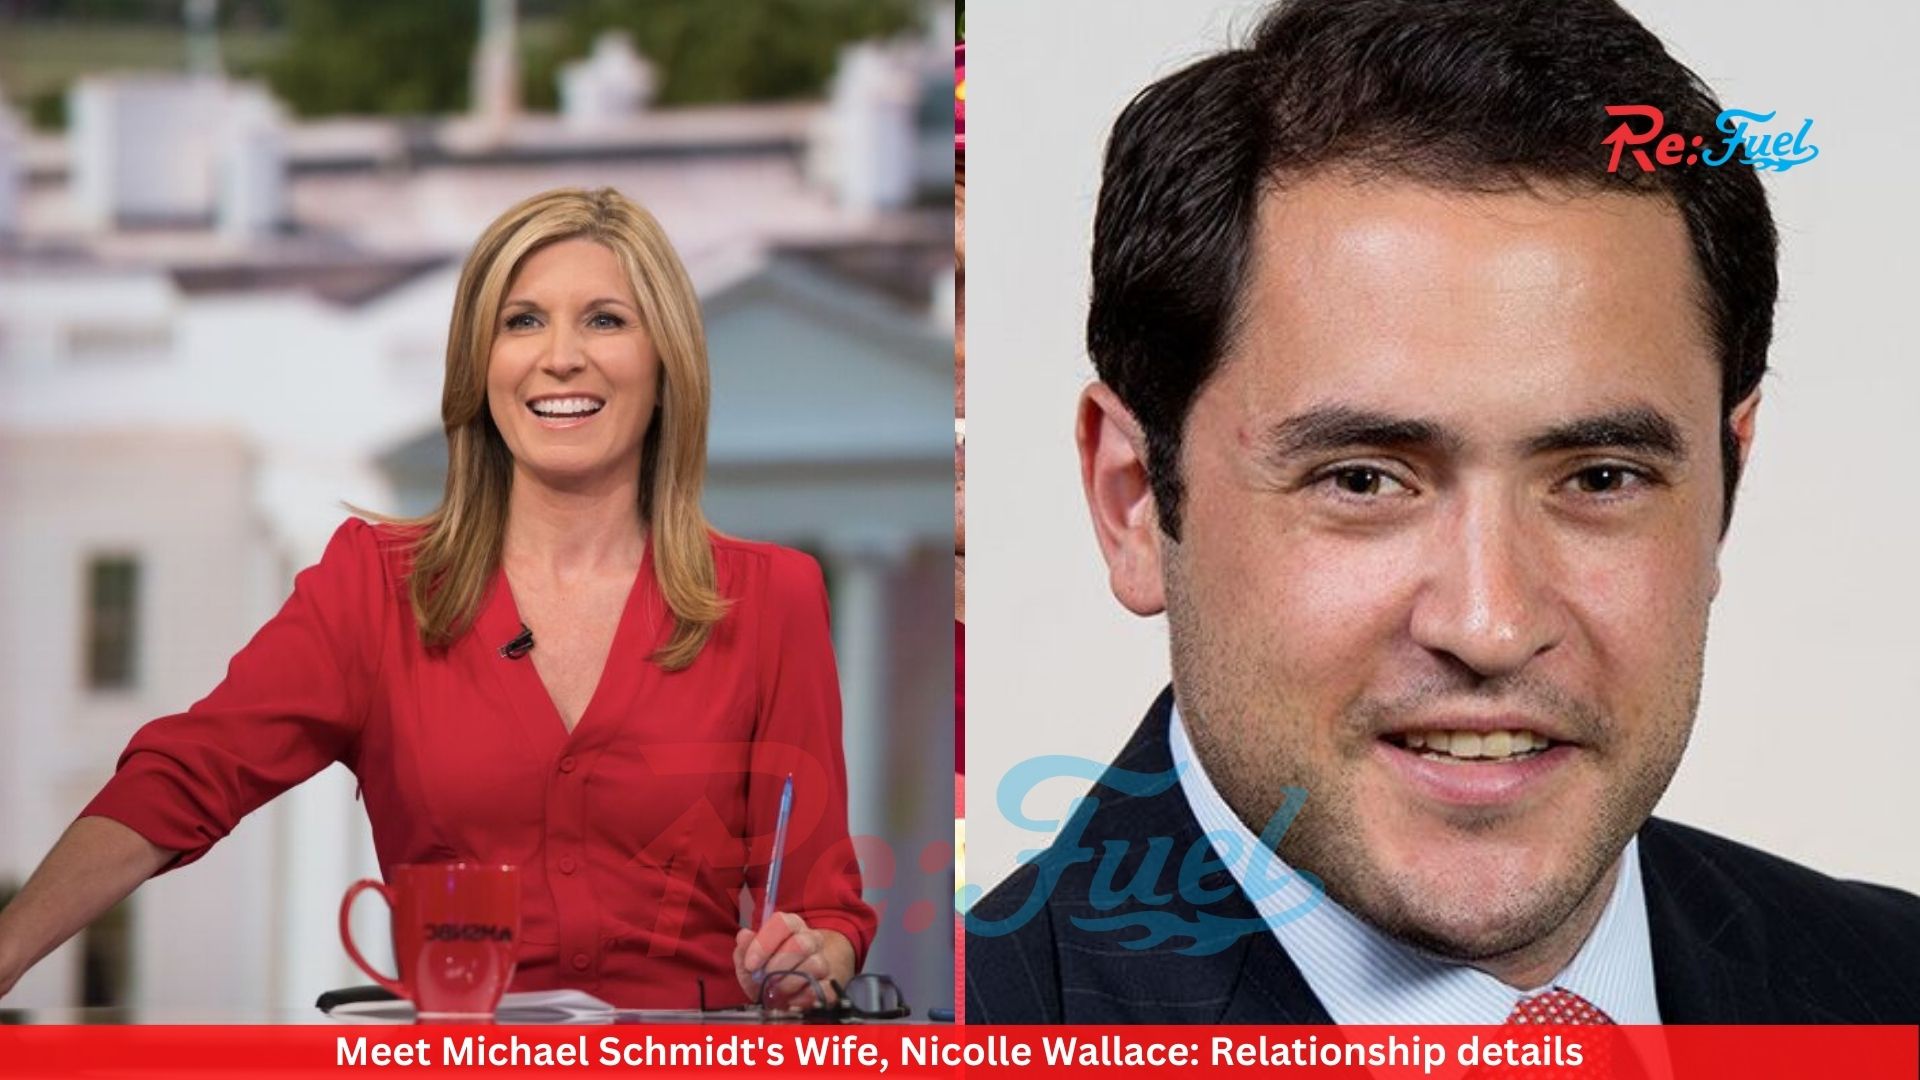 Meet Michael Schmidt's Wife, Nicolle Wallace: Relationship details